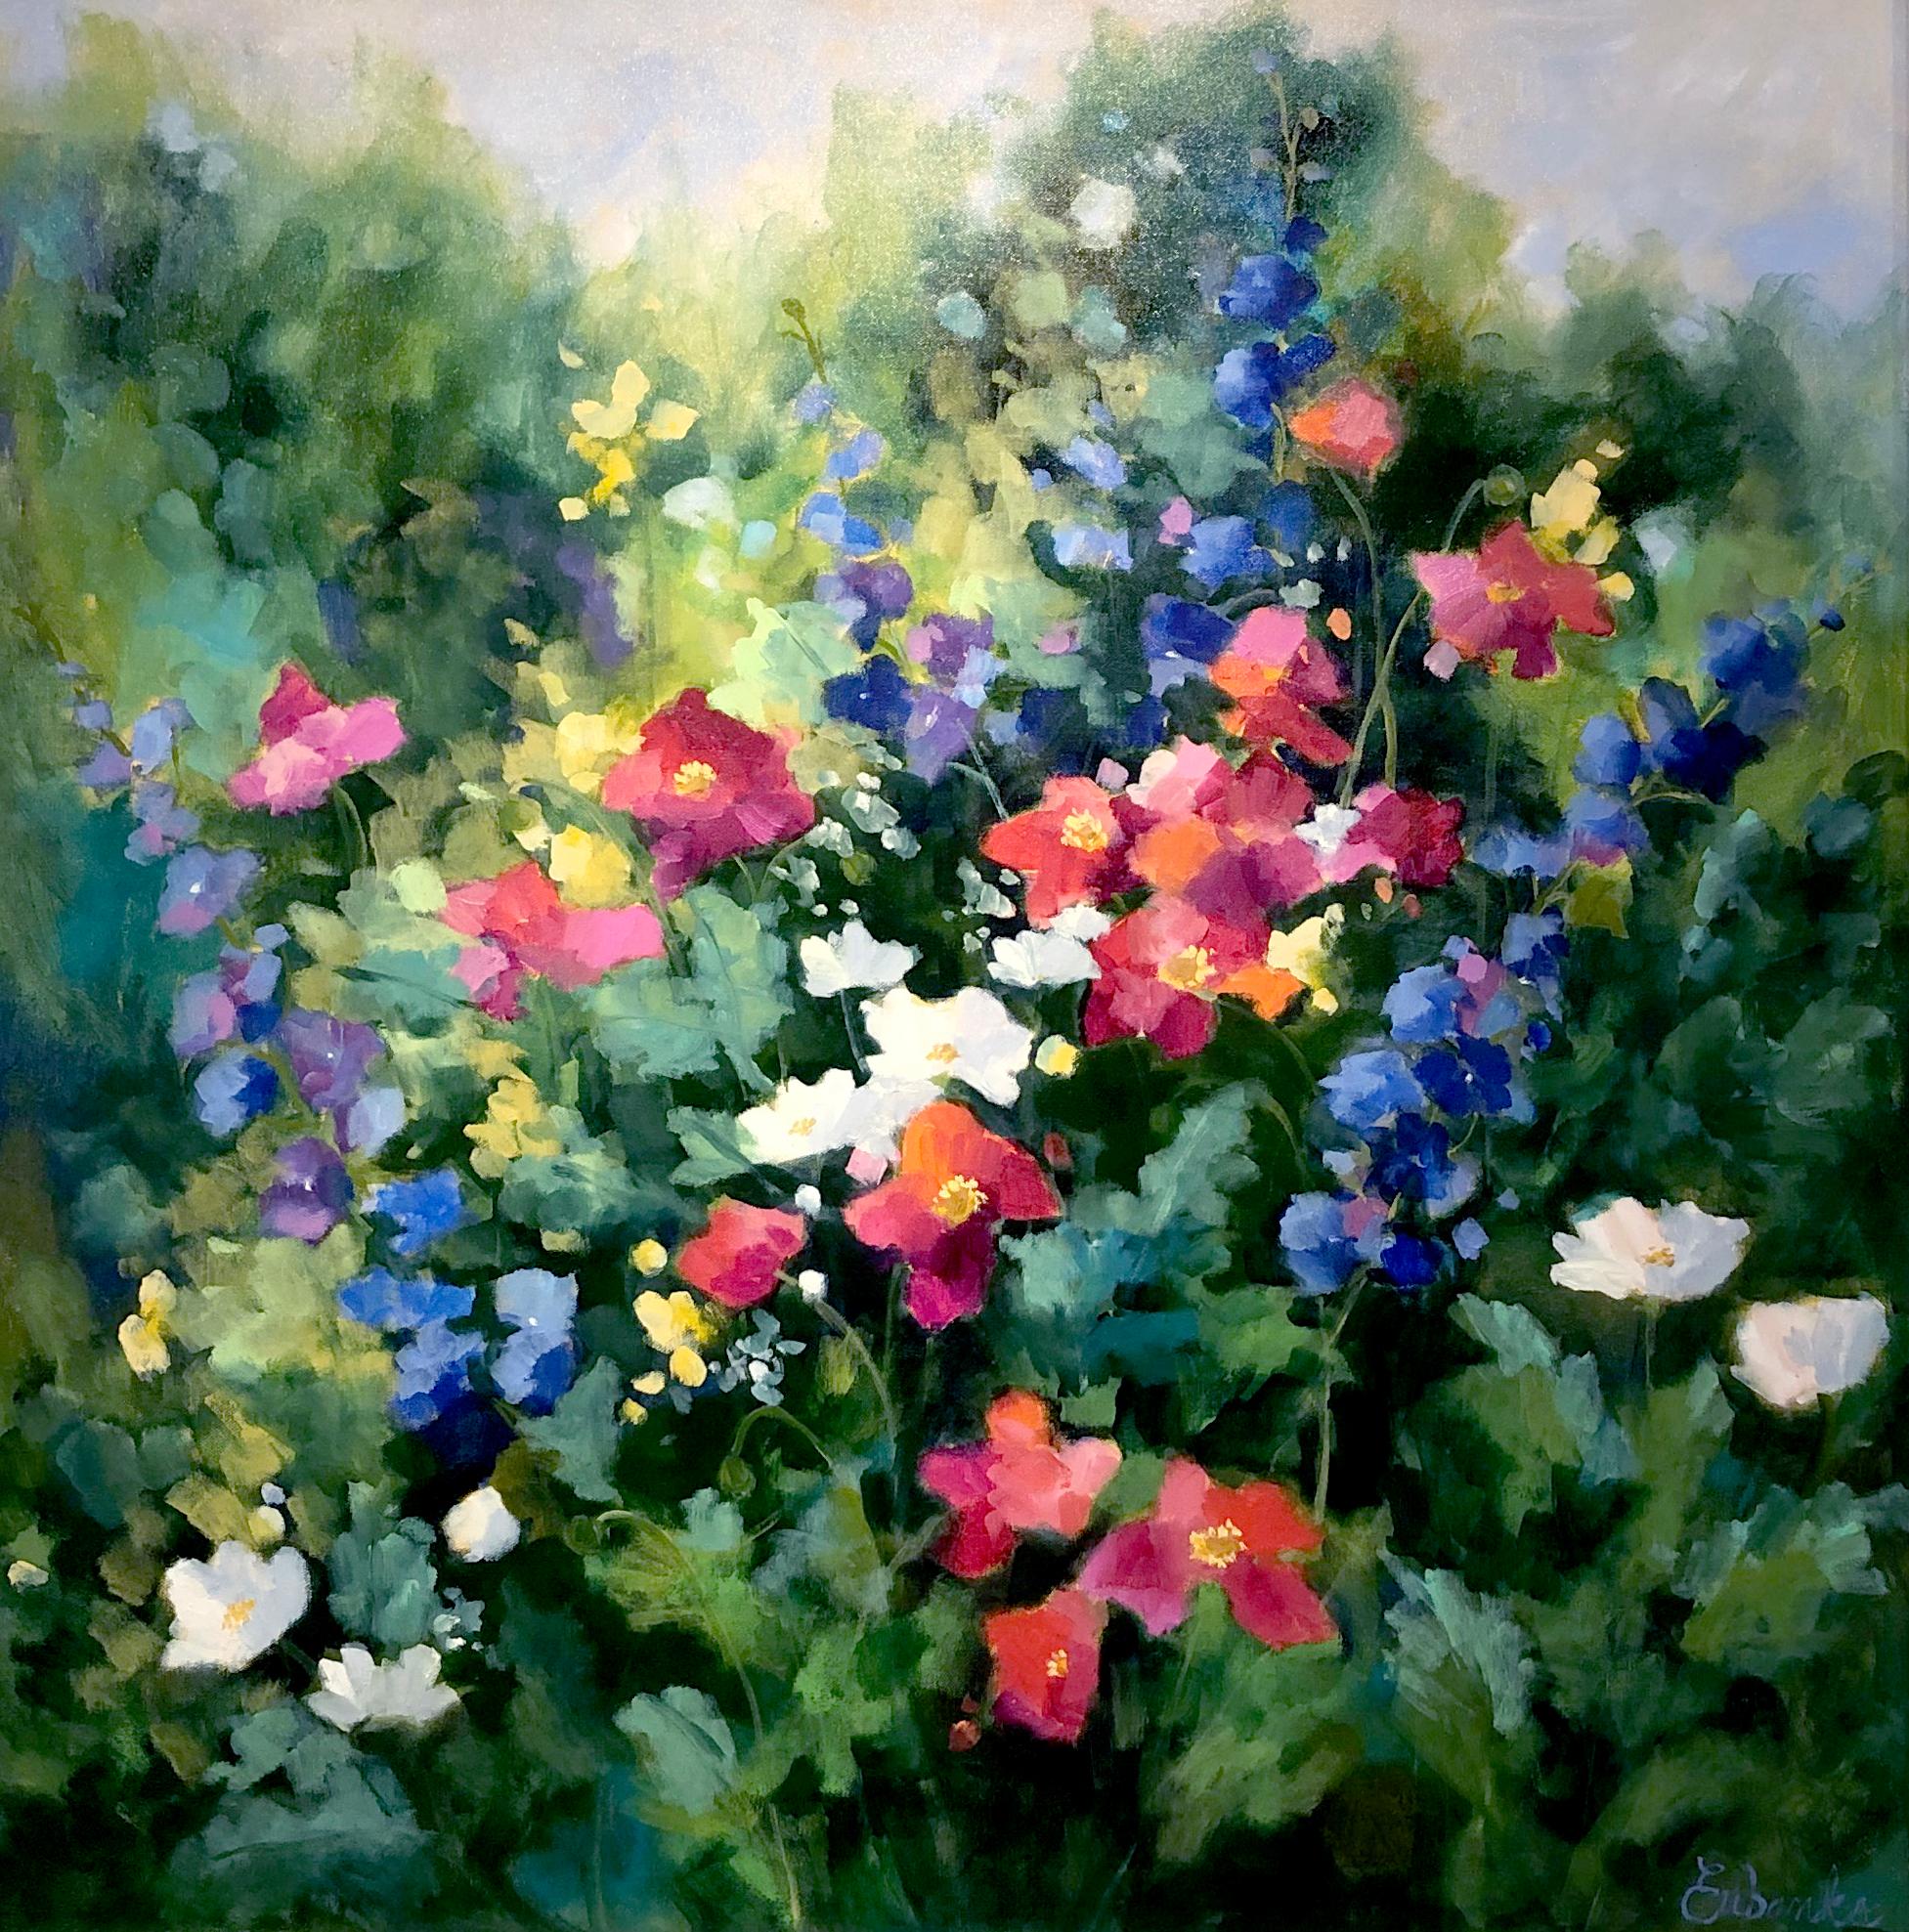 Lori Eubanks, « Full of Joy », peinture à l'huile sur toile de jardin à fleurs colorées 36 x 36